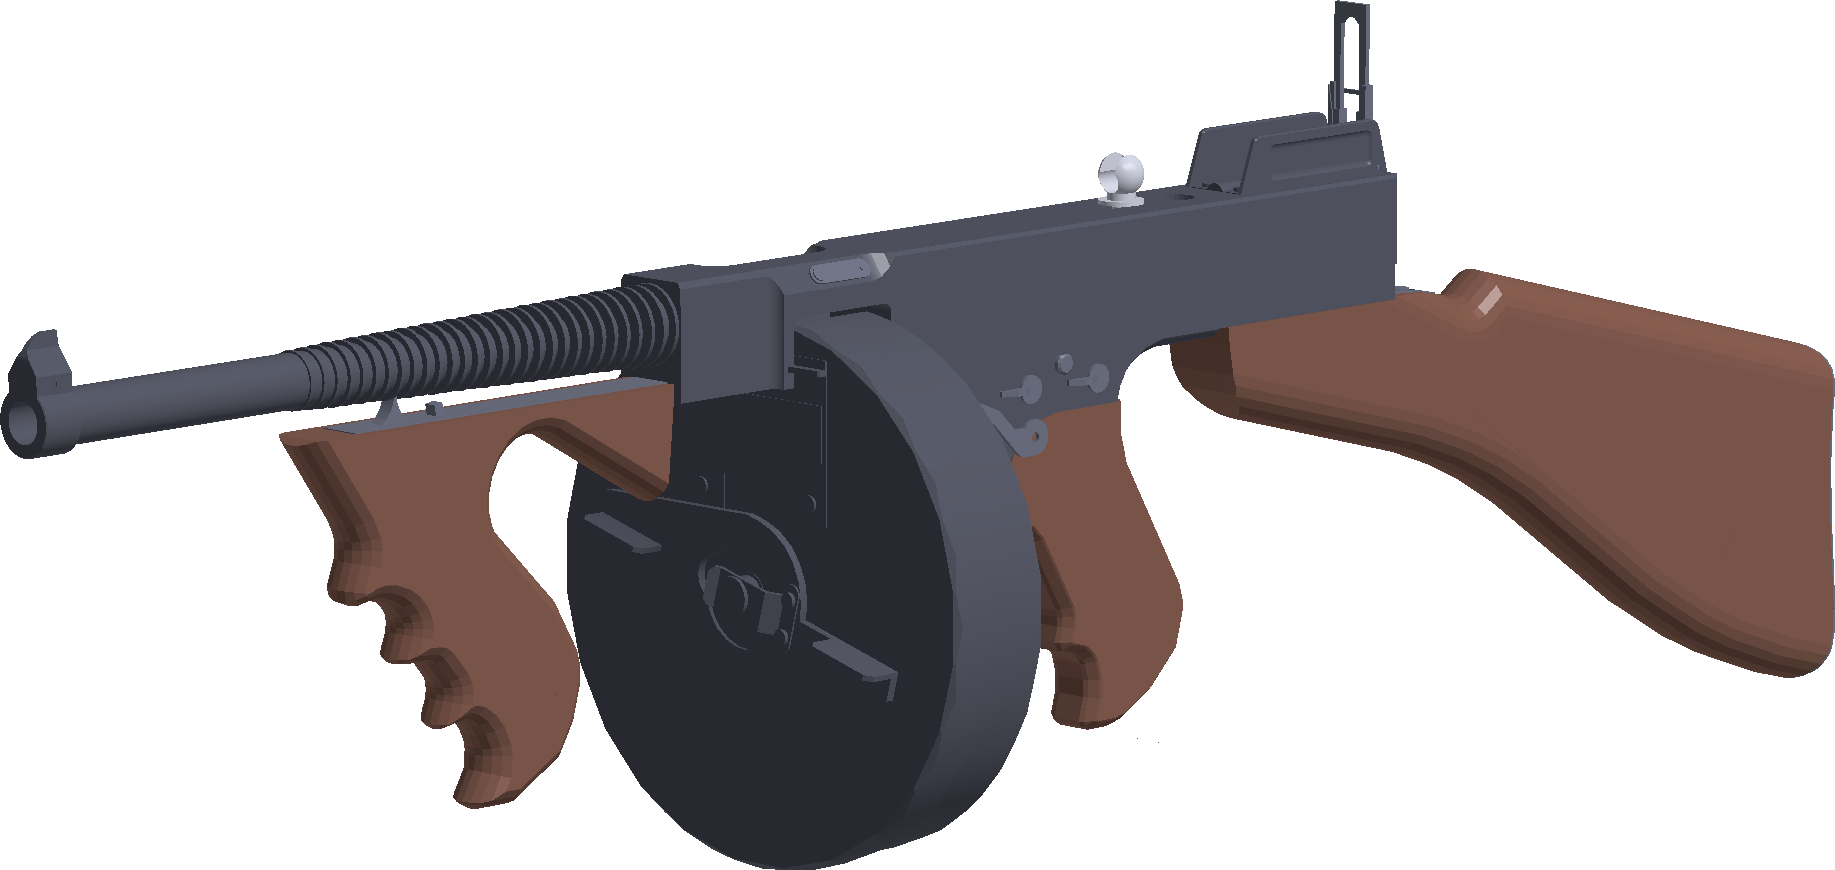 Tommy Gun Phantom Forces Wiki Fandom - gun model ak47 type gun roblox